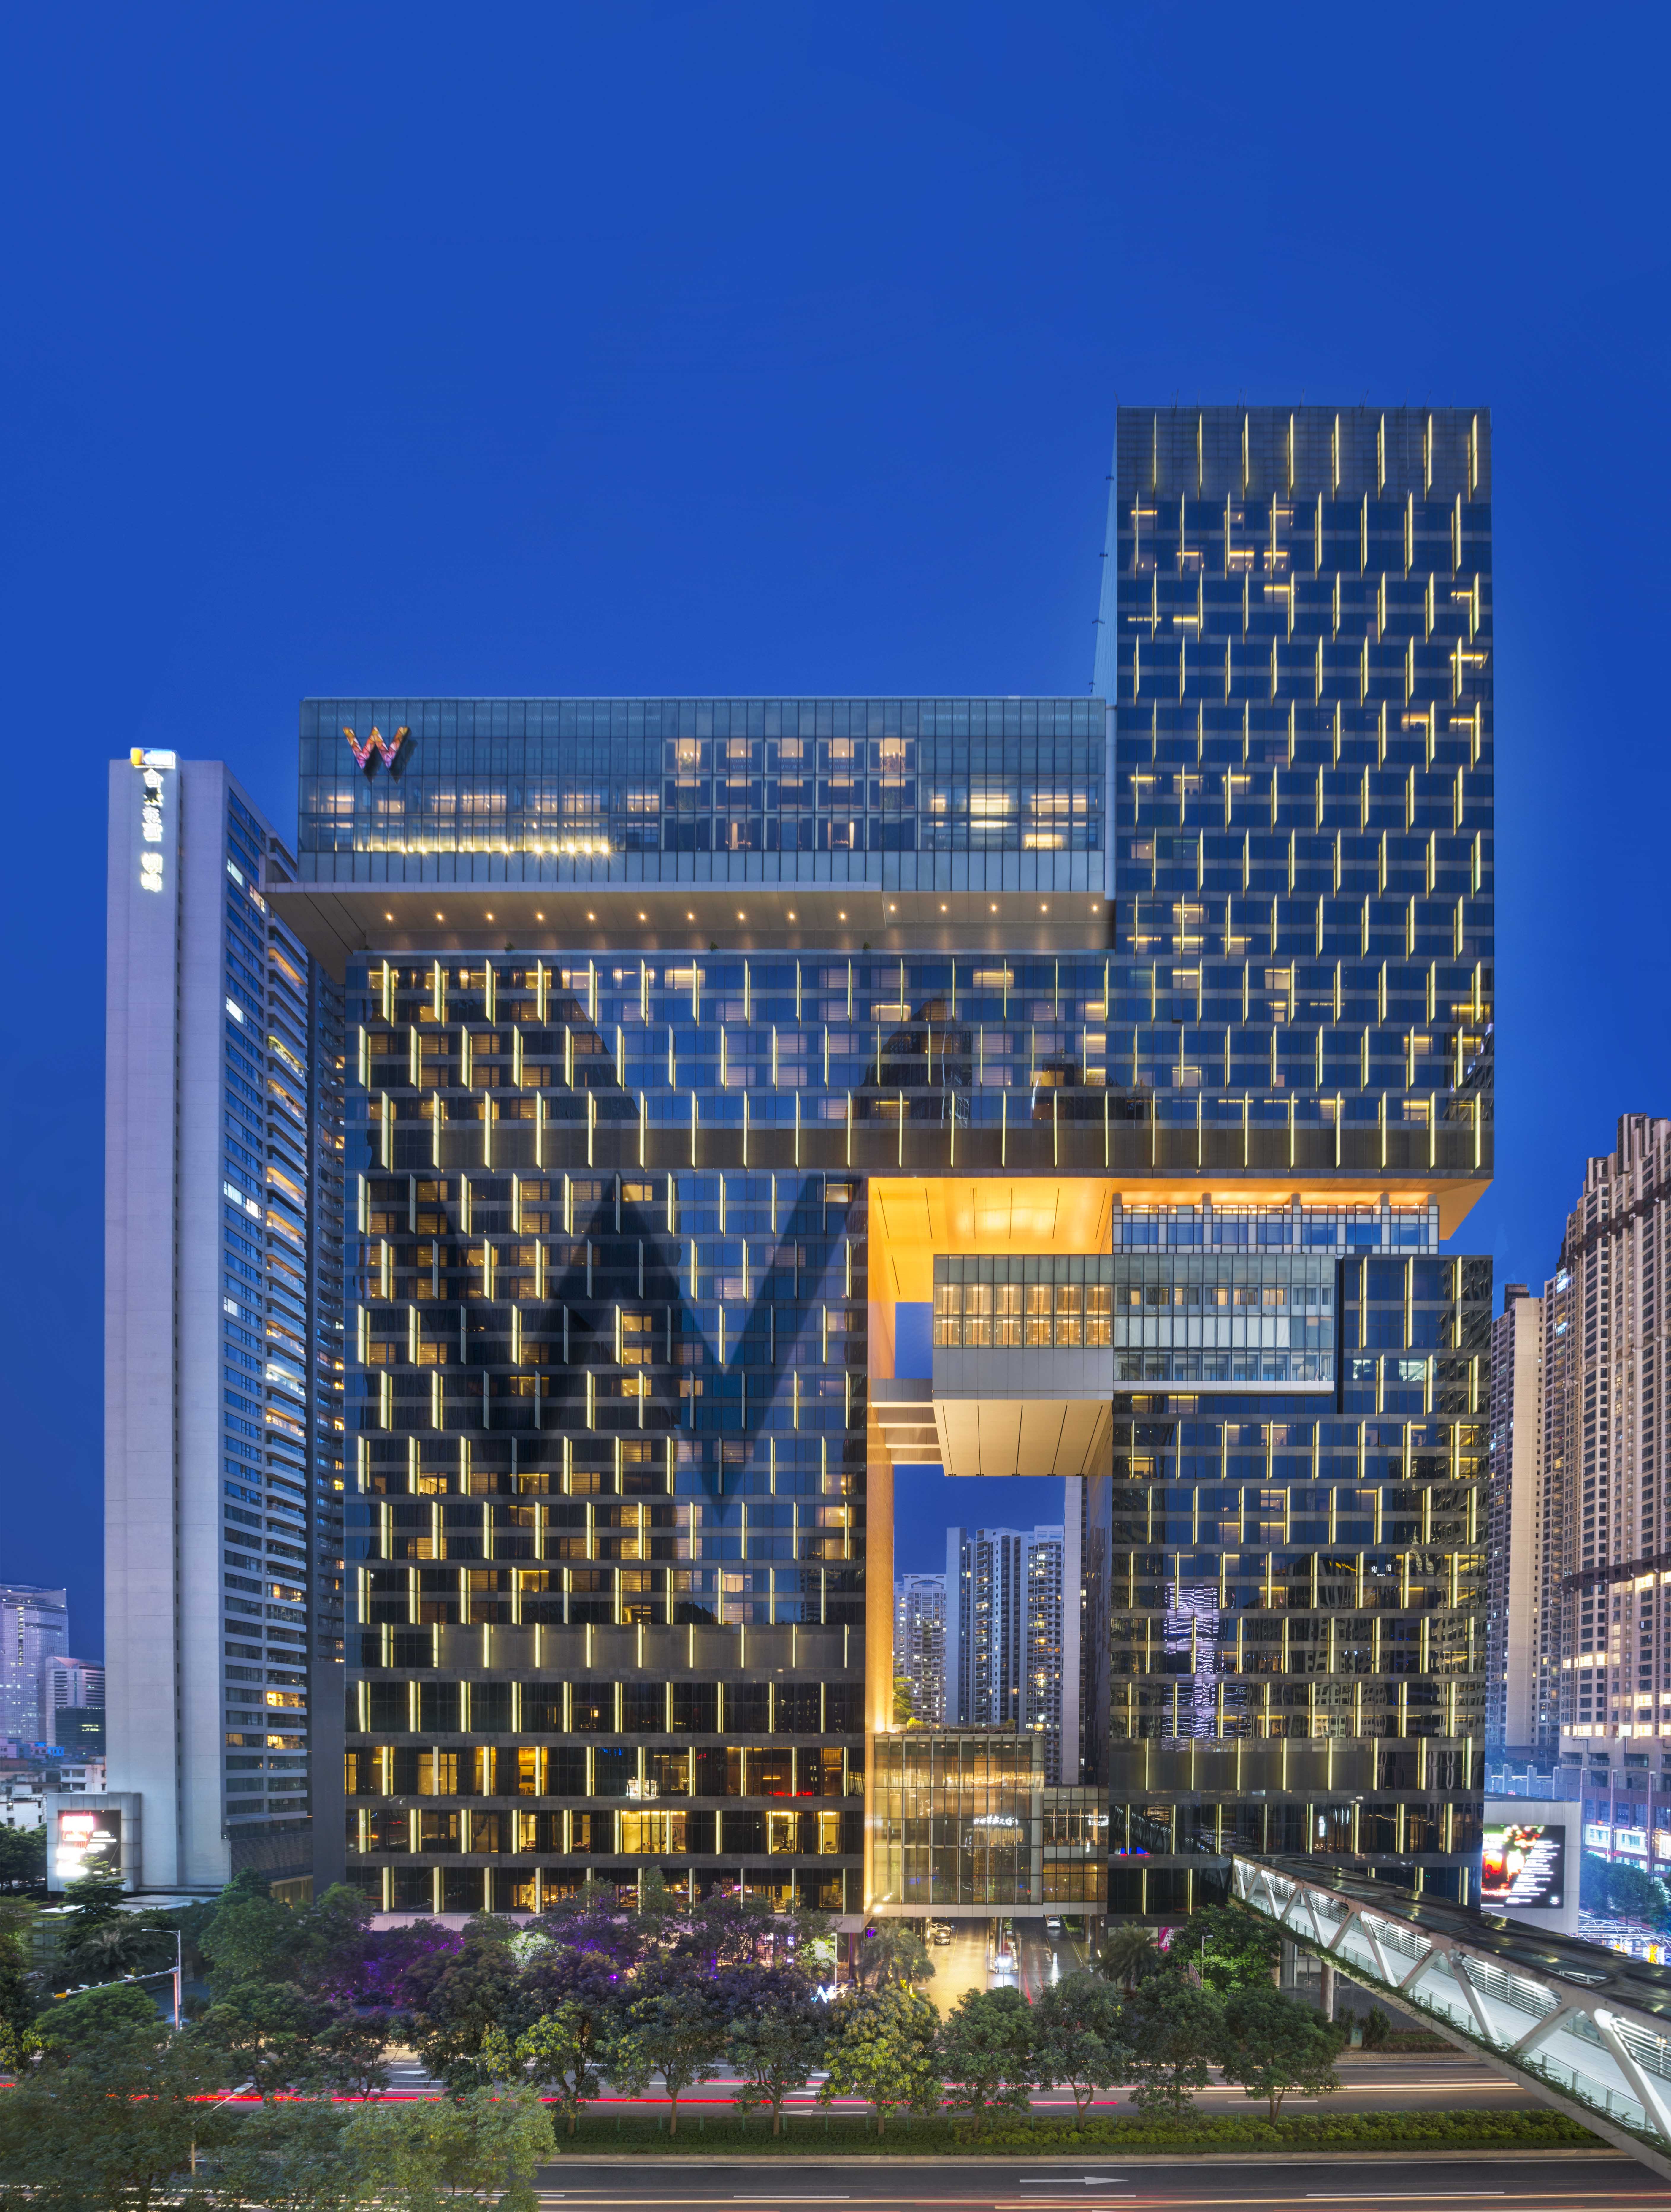 广州圣丰索菲特大酒店|香港郑中设计事务所-建E网设计案例